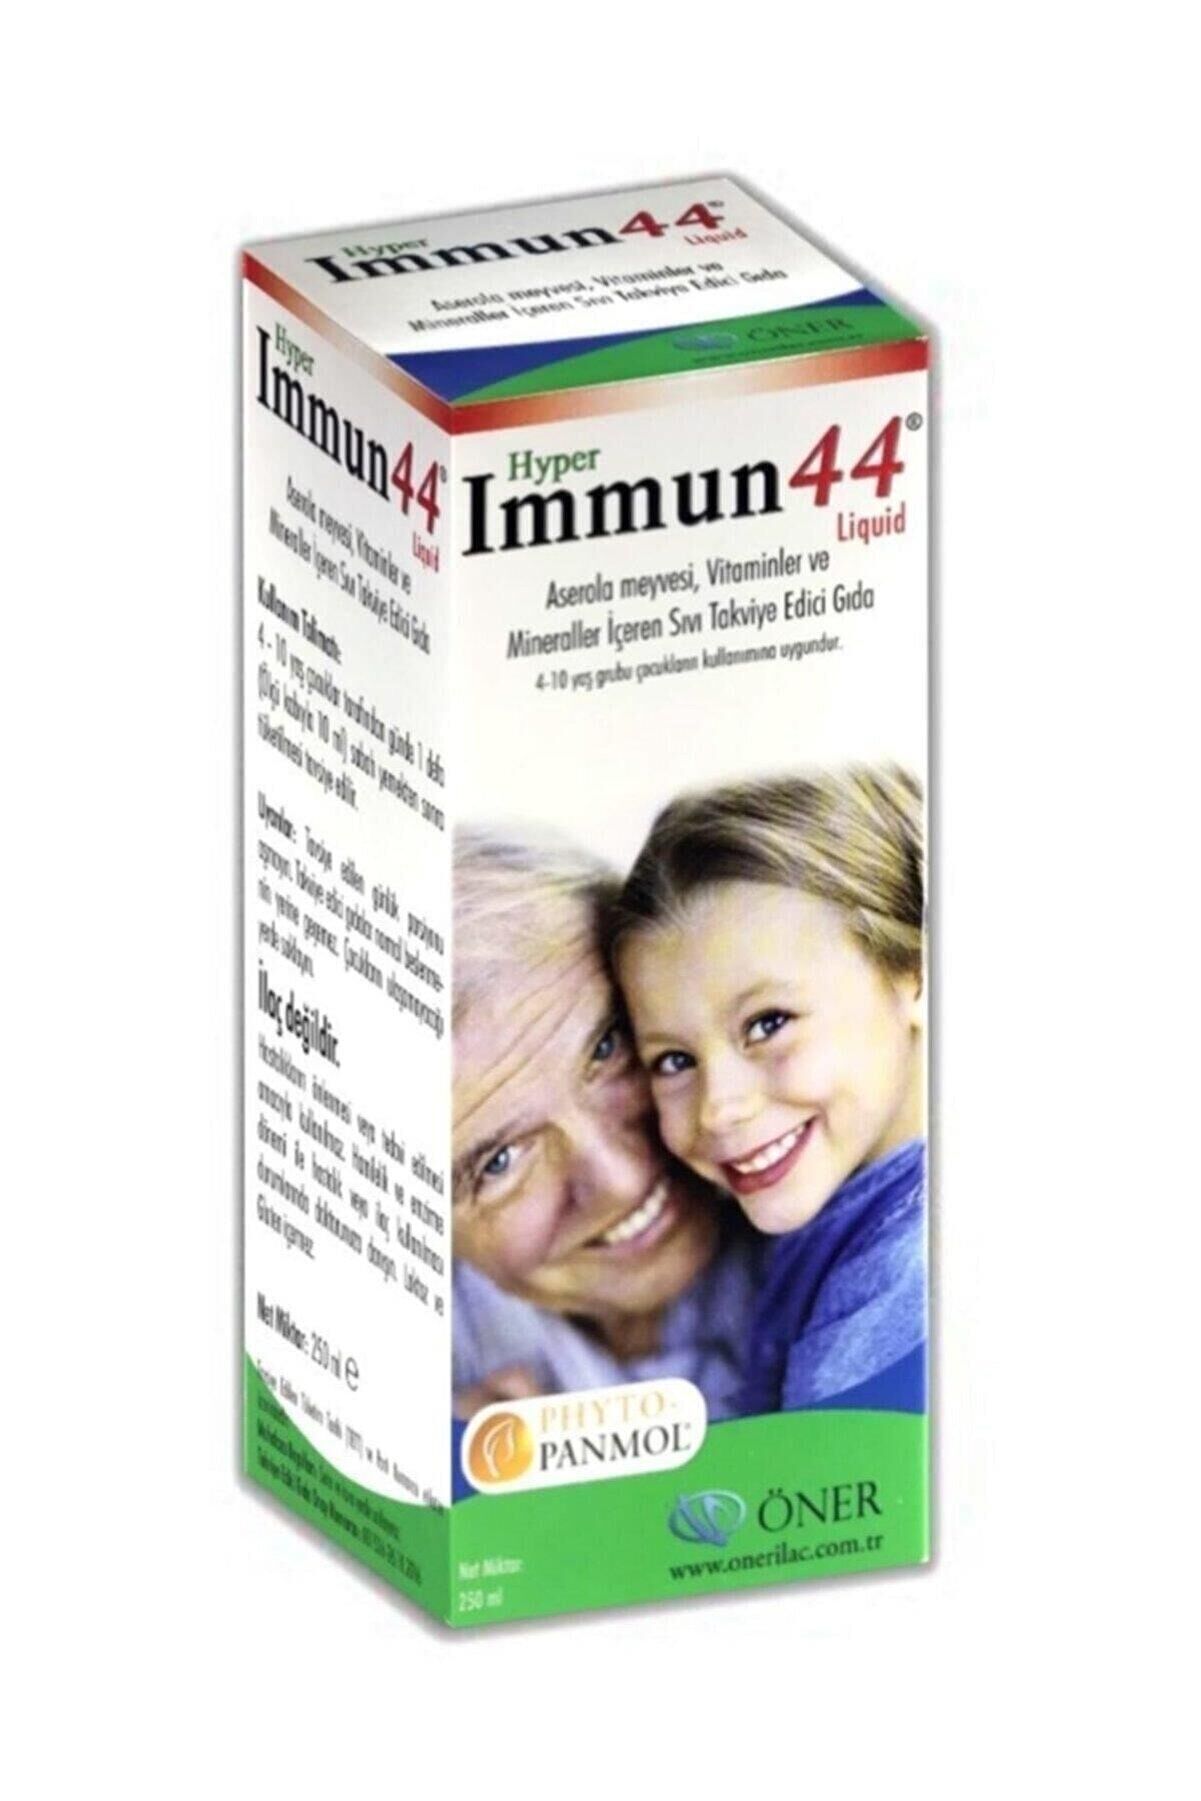 Hyper Immun 44 Liquid Aserola Meyvesi,vitaminler ve Mineraller İçeren Sıvı Takviye Edici Gıda